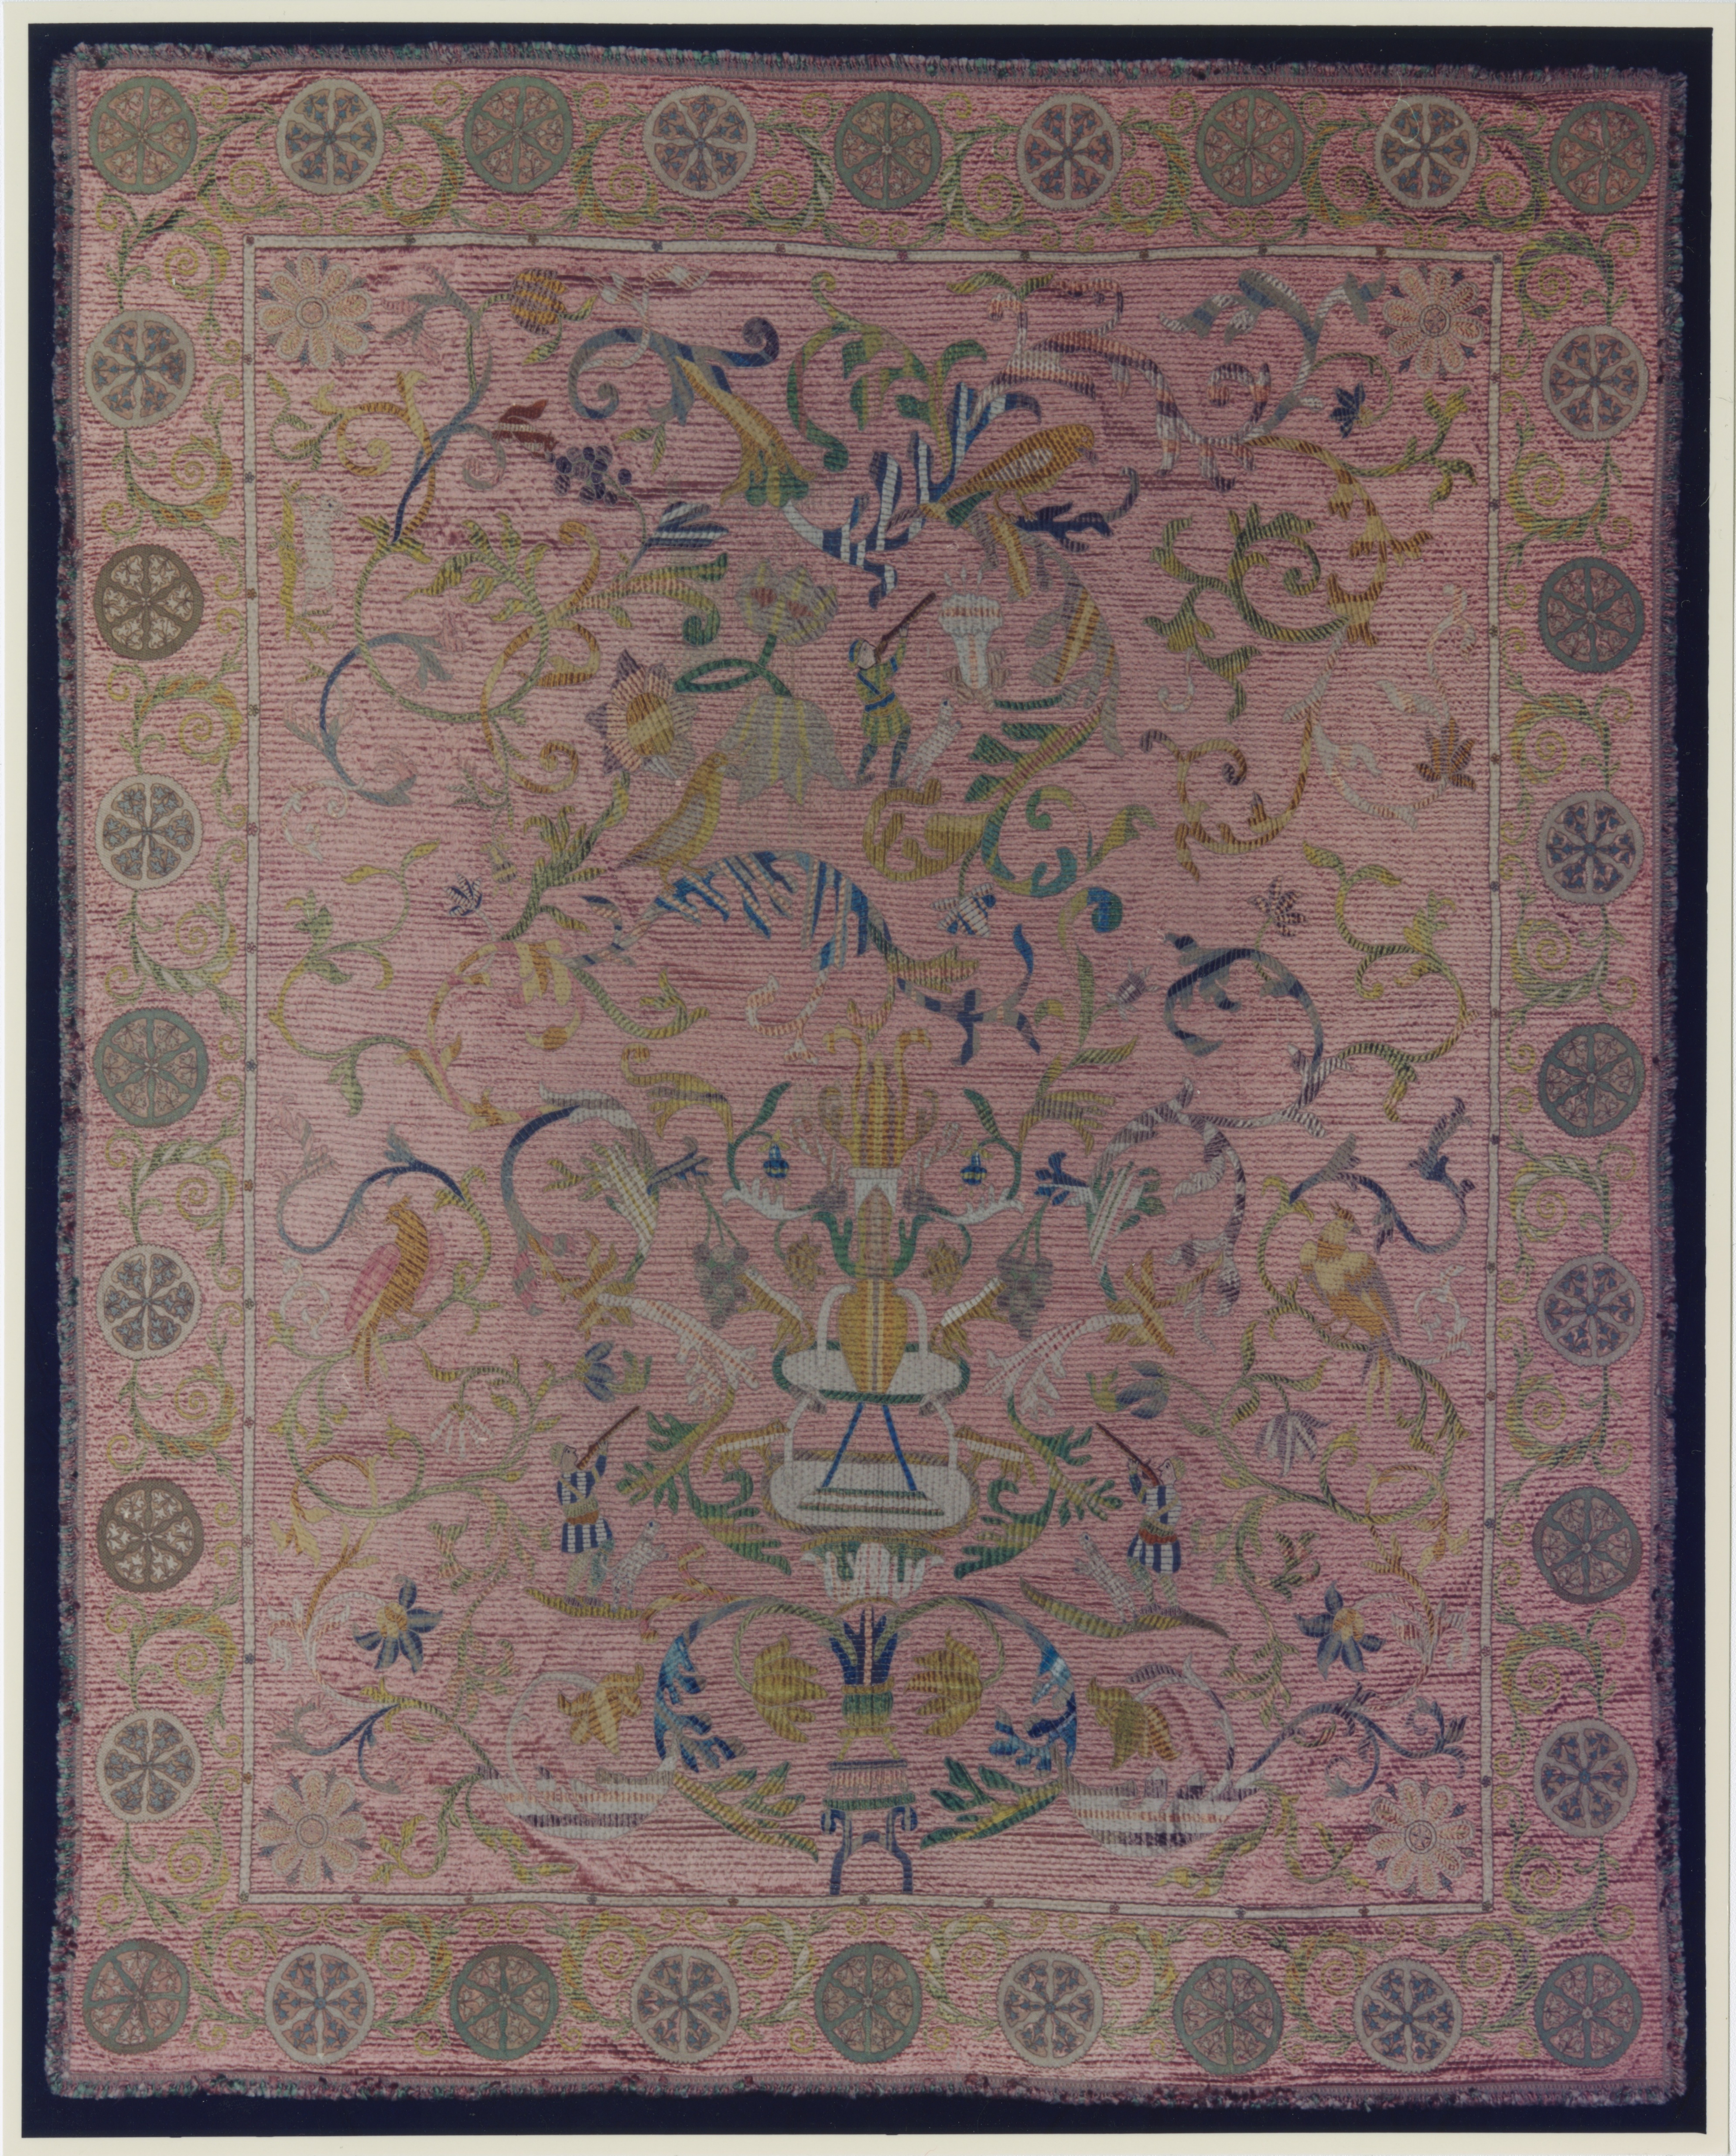 Indien: Decke, 17. Jahrhundert, IX 999. (Stiftung Preußische Schlösser und Gärten Berlin-Brandenburg CC BY-NC-SA)